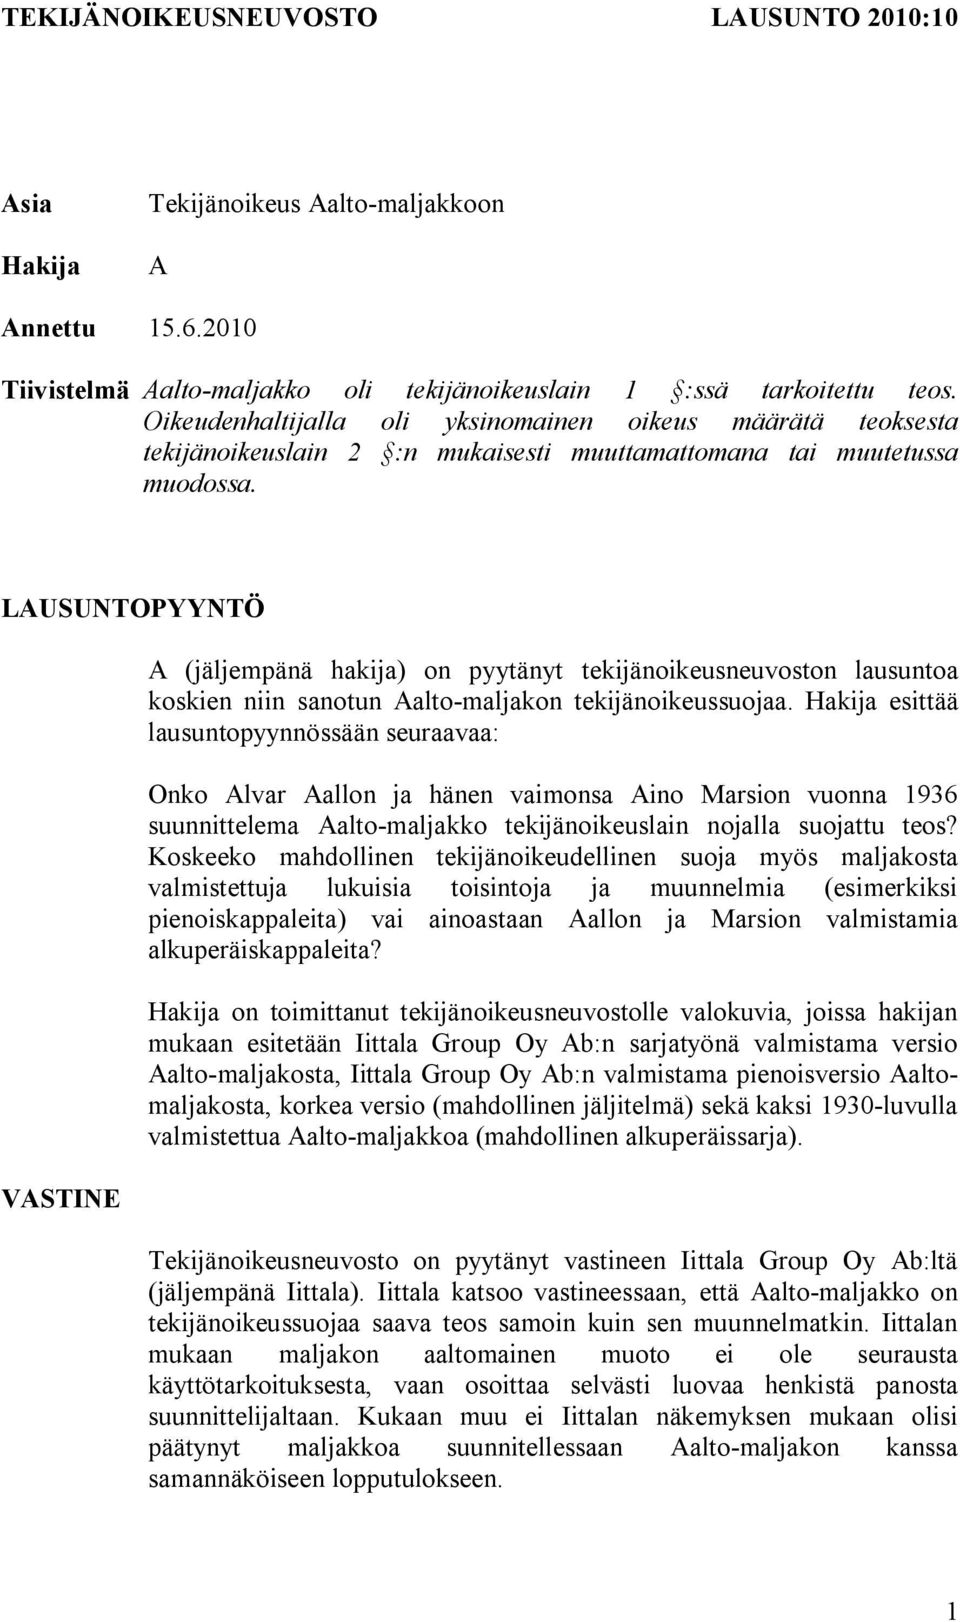 LAUSUNTOPYYNTÖ VASTINE A (jäljempänä hakija) on pyytänyt tekijänoikeusneuvoston lausuntoa koskien niin sanotun Aalto-maljakon tekijänoikeussuojaa.